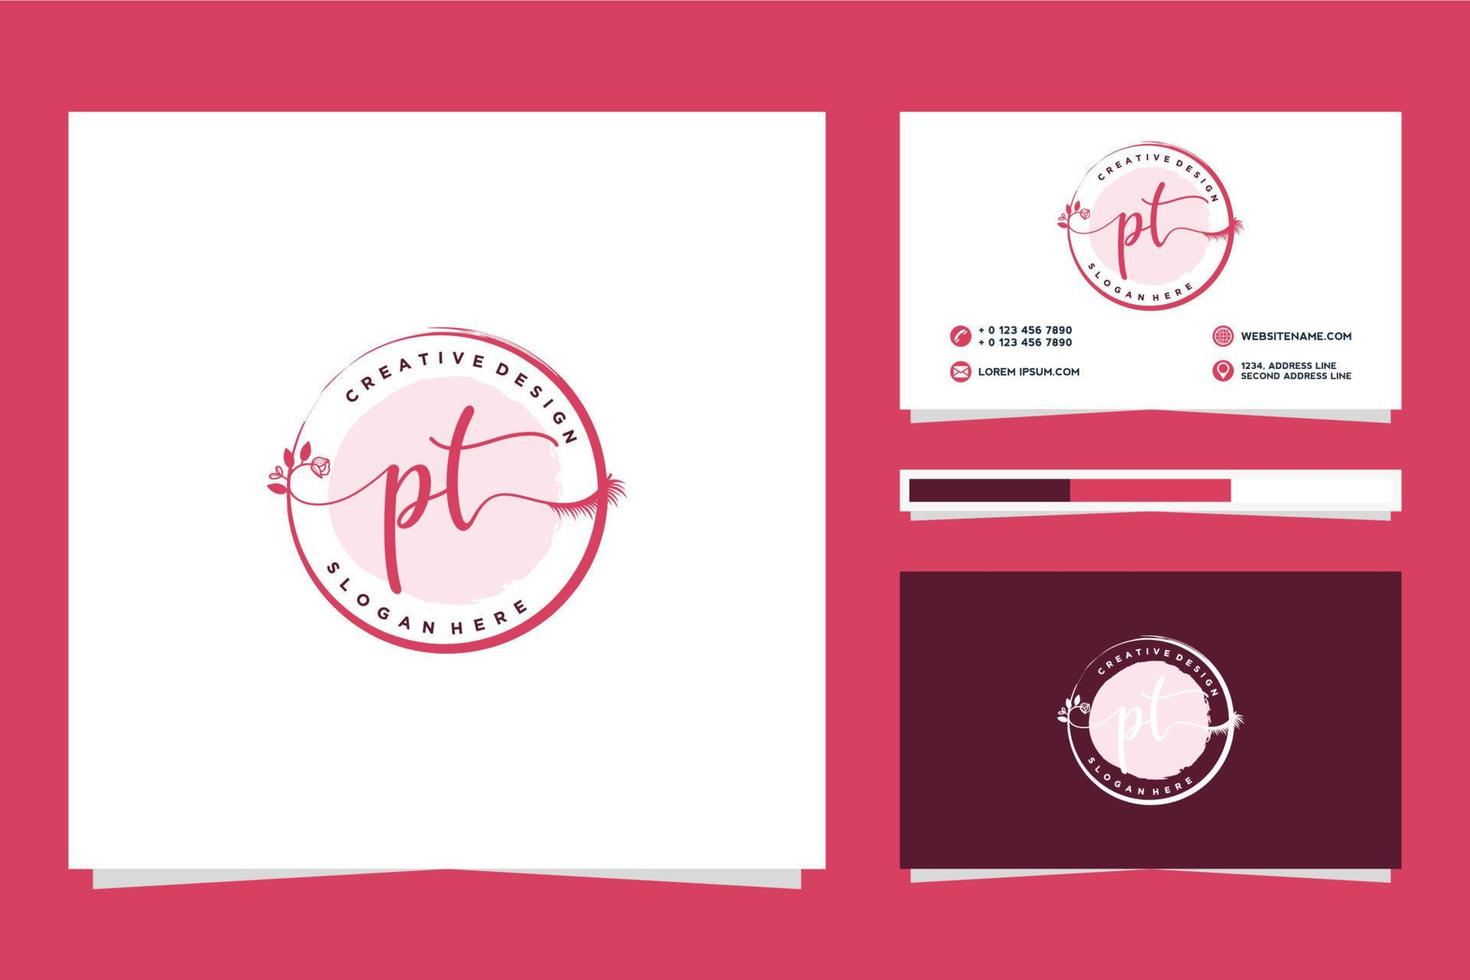 Initiale pt feminin Logo Sammlungen und Geschäft Karte Vorlage Prämie Vektor